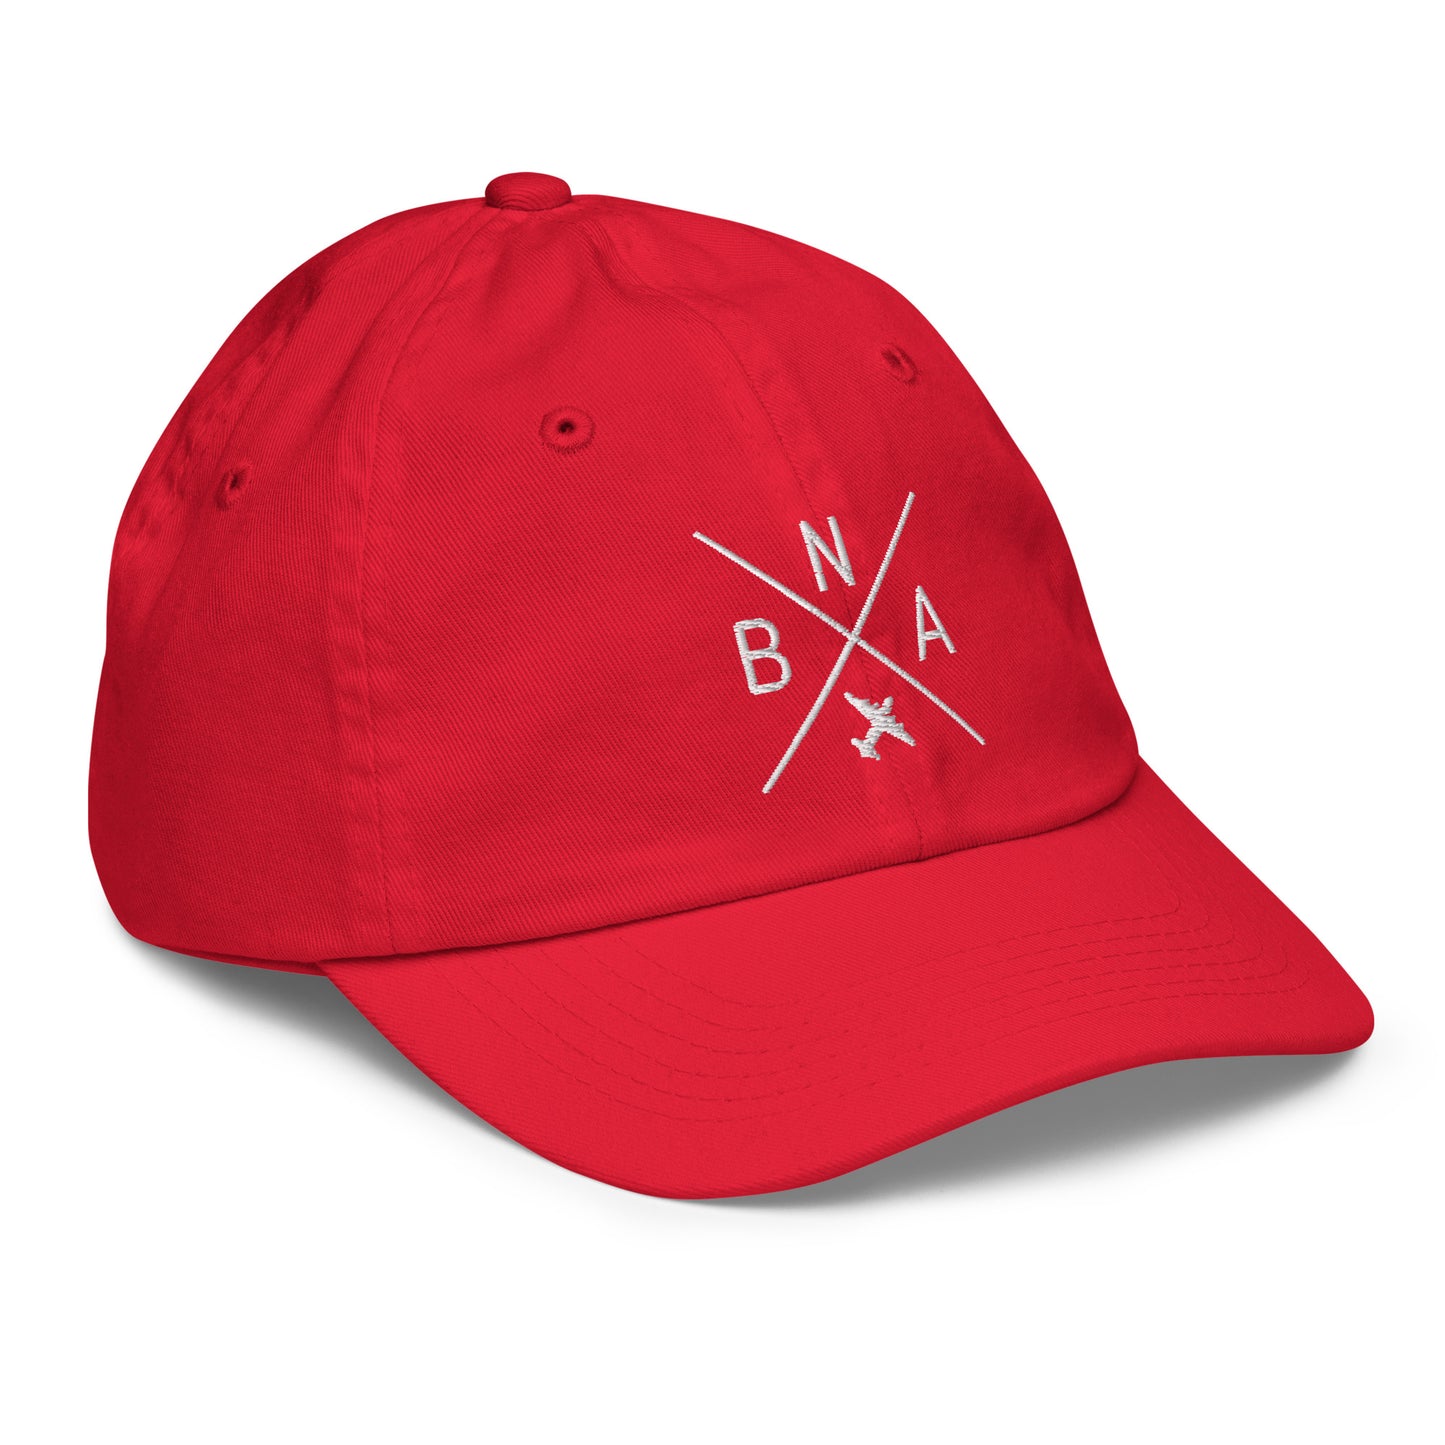 Crossed-X Kid's Baseball Cap - White • BNA Nashville • YHM Designs - Image 18